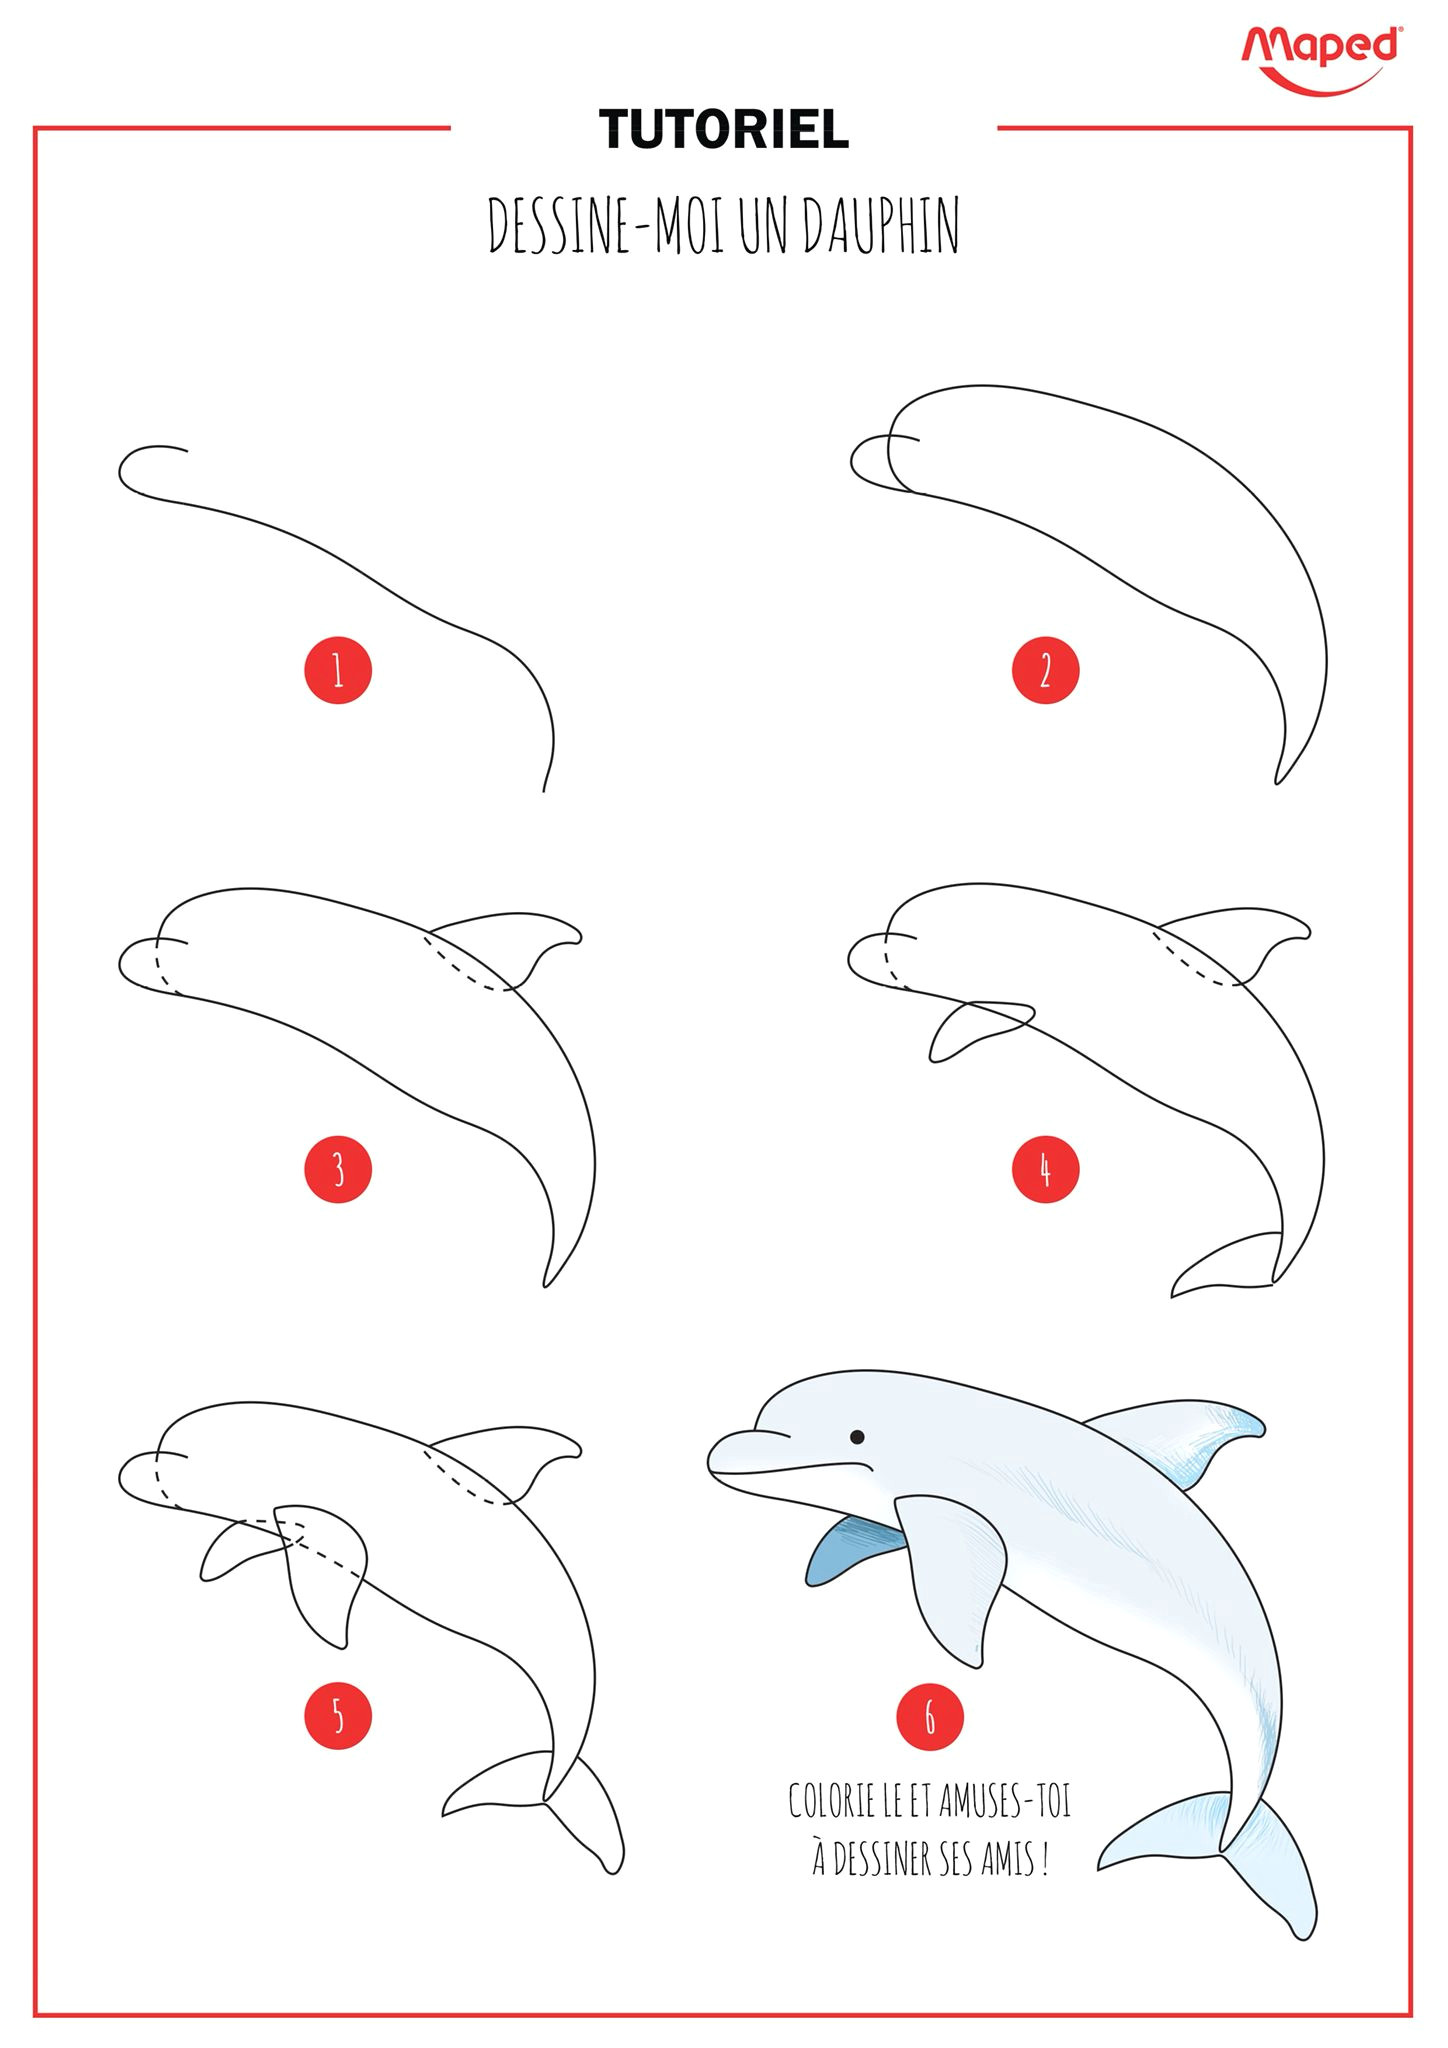 Easy Drawings Dolphin 2016 11 En Delfin Kokyco S Drawings Pinterest Arte